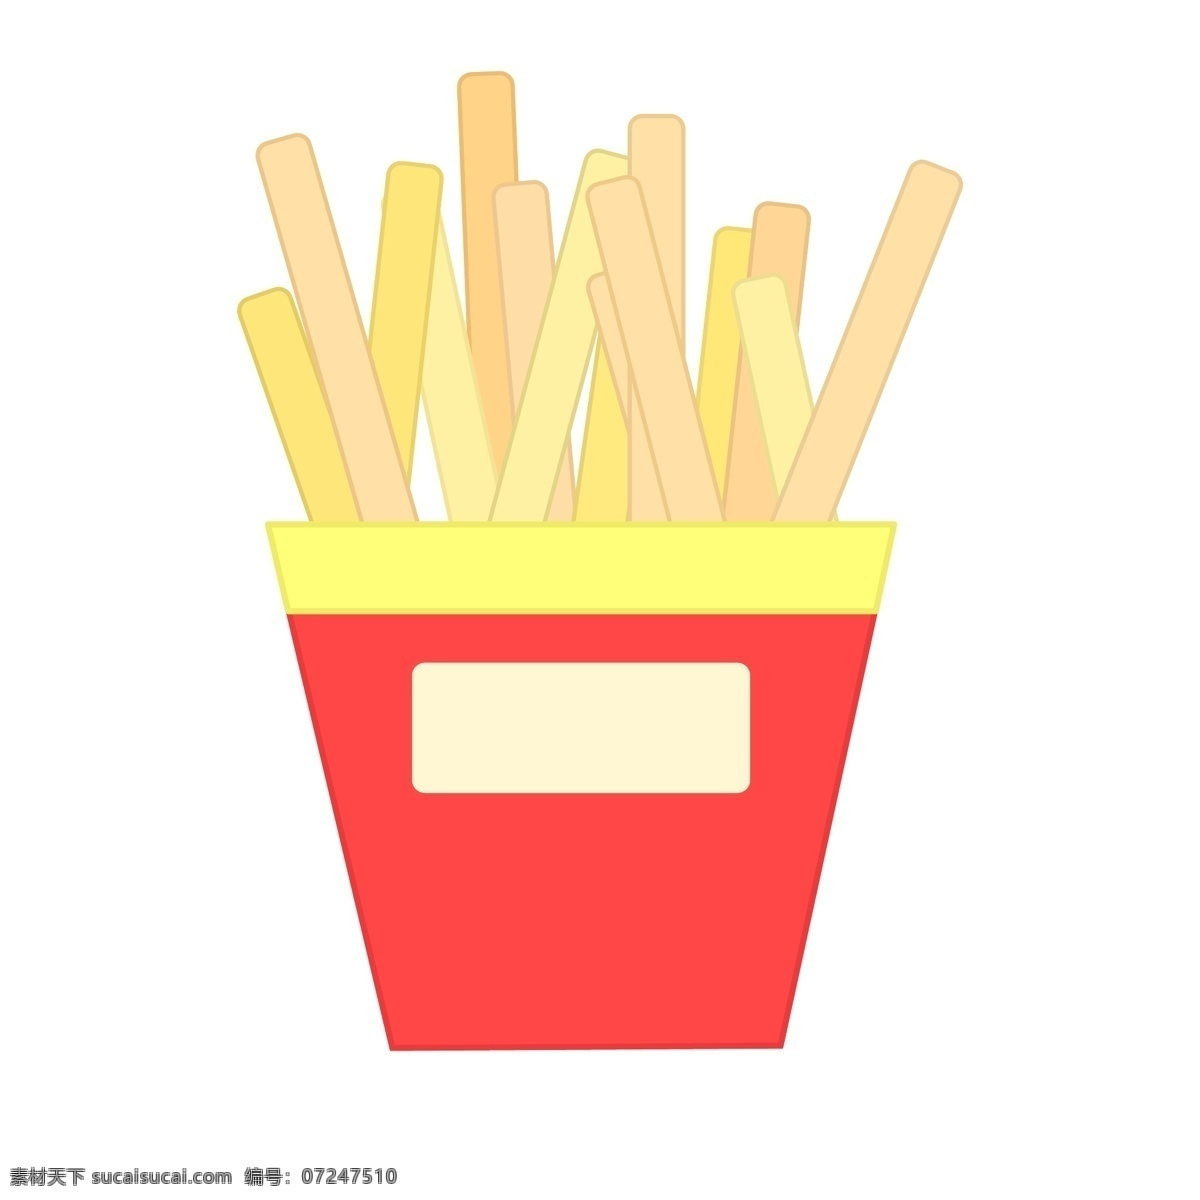 美味 食物 薯条 插画 黄色的薯条 卡通插画 食物插画 食品插画 美食插画 美味食物 红色的袋子